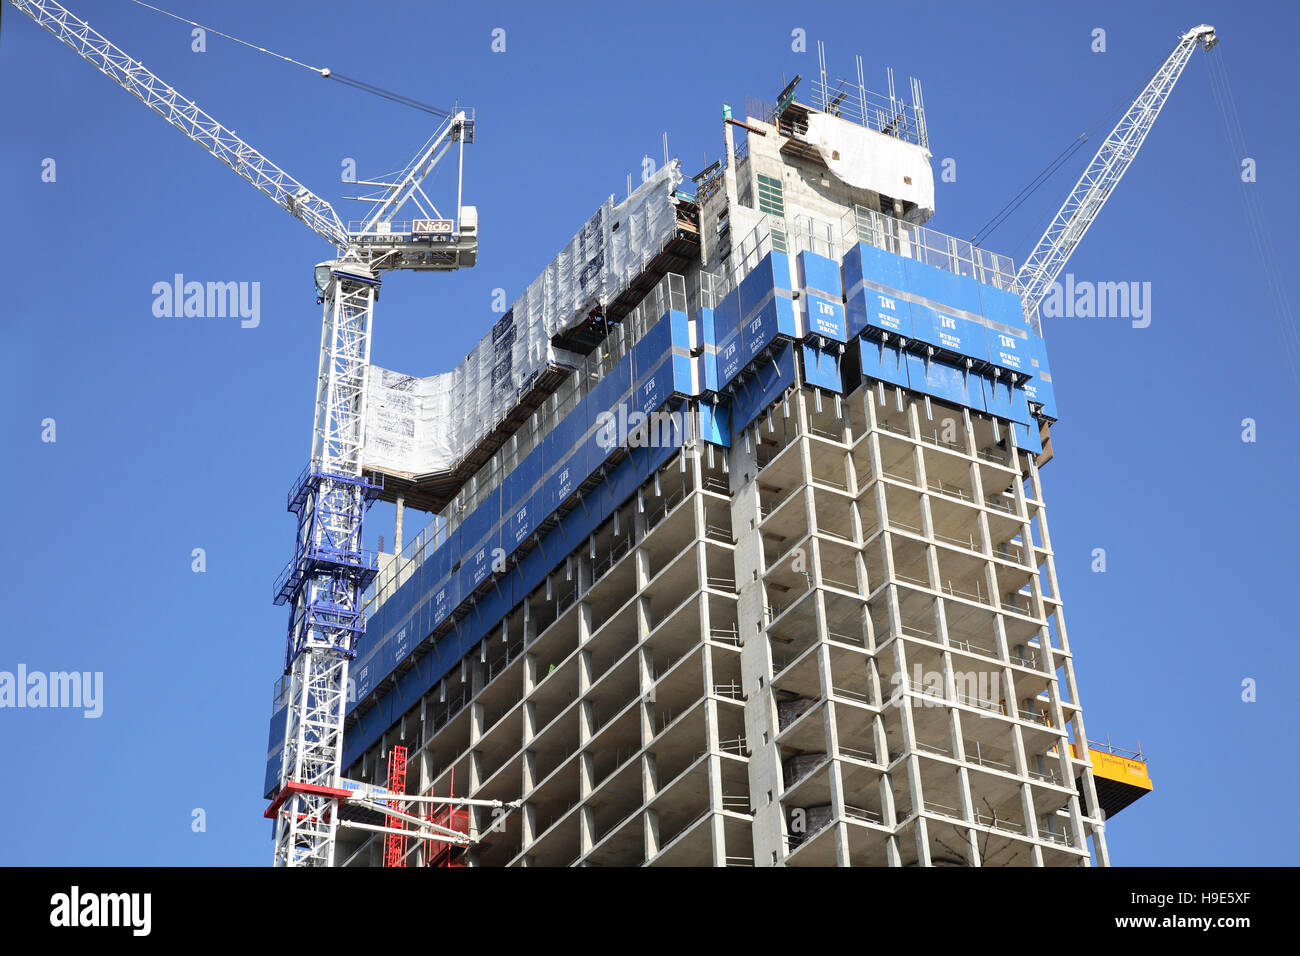 Costruzione di un nuovo e concreto incorniciato a torre nel centro di Londra, Regno Unito. Mostra gru a torre e le arrampicate, schermi di protezione. Foto Stock